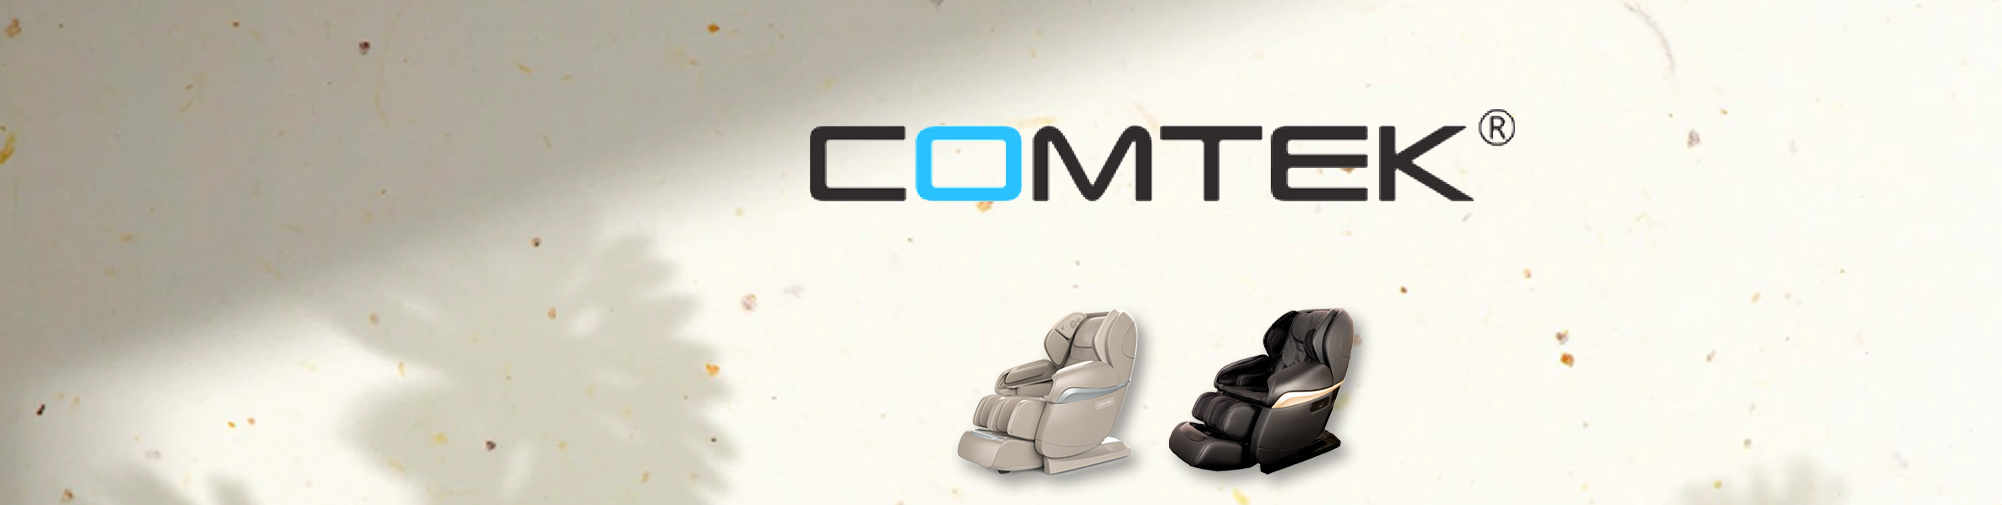 COMTEK - профессиональный оригинальный производитель | Massage Chair World